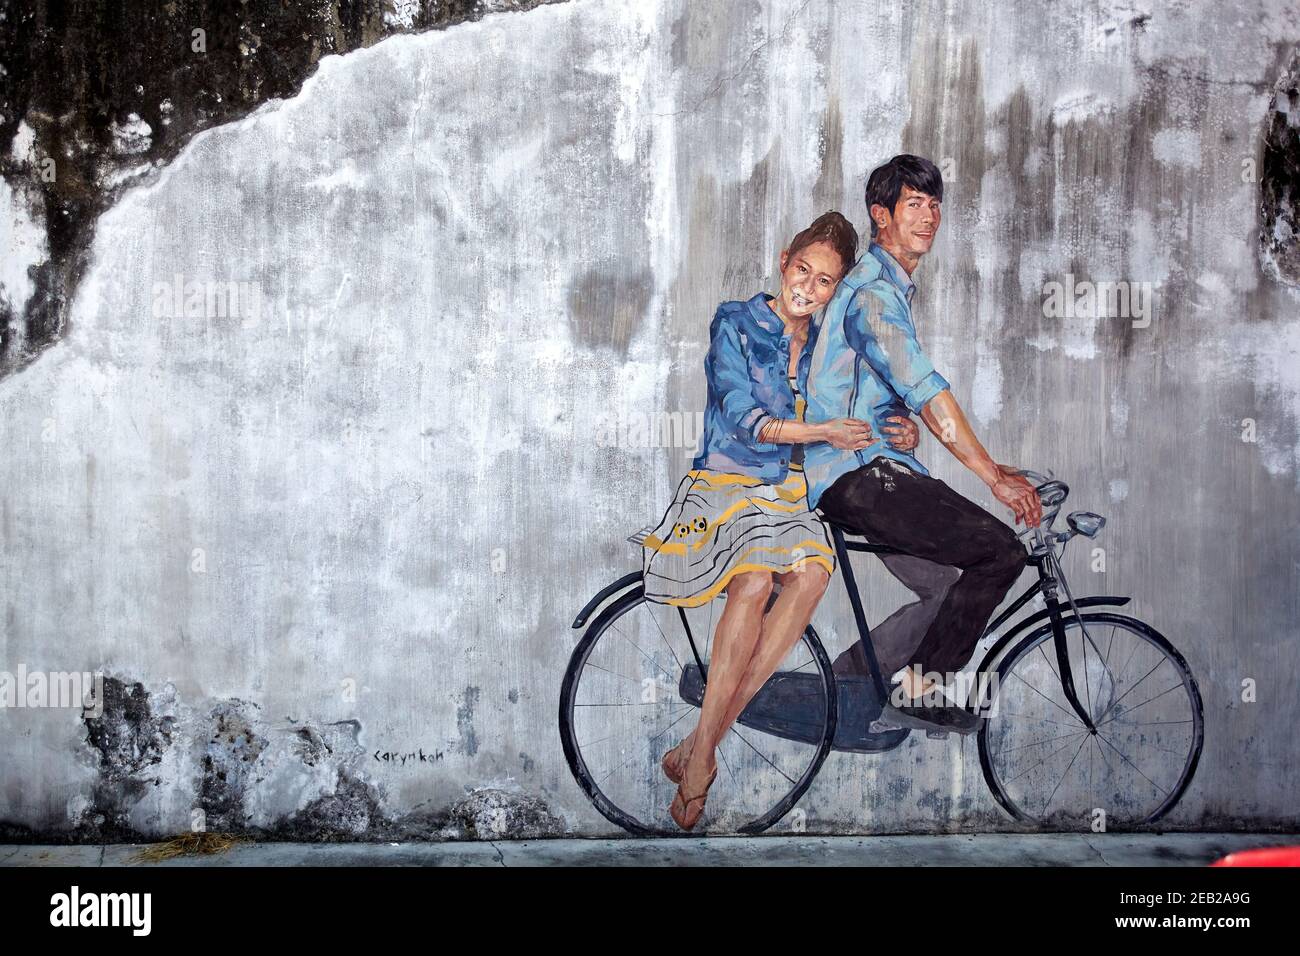 La scène d'art urbain de Penang a pris son envol en 2012 lorsque le George Town Festival a commandé un projet appelé Mirrors, une série de peintures murales d'un artiste lituanien Banque D'Images